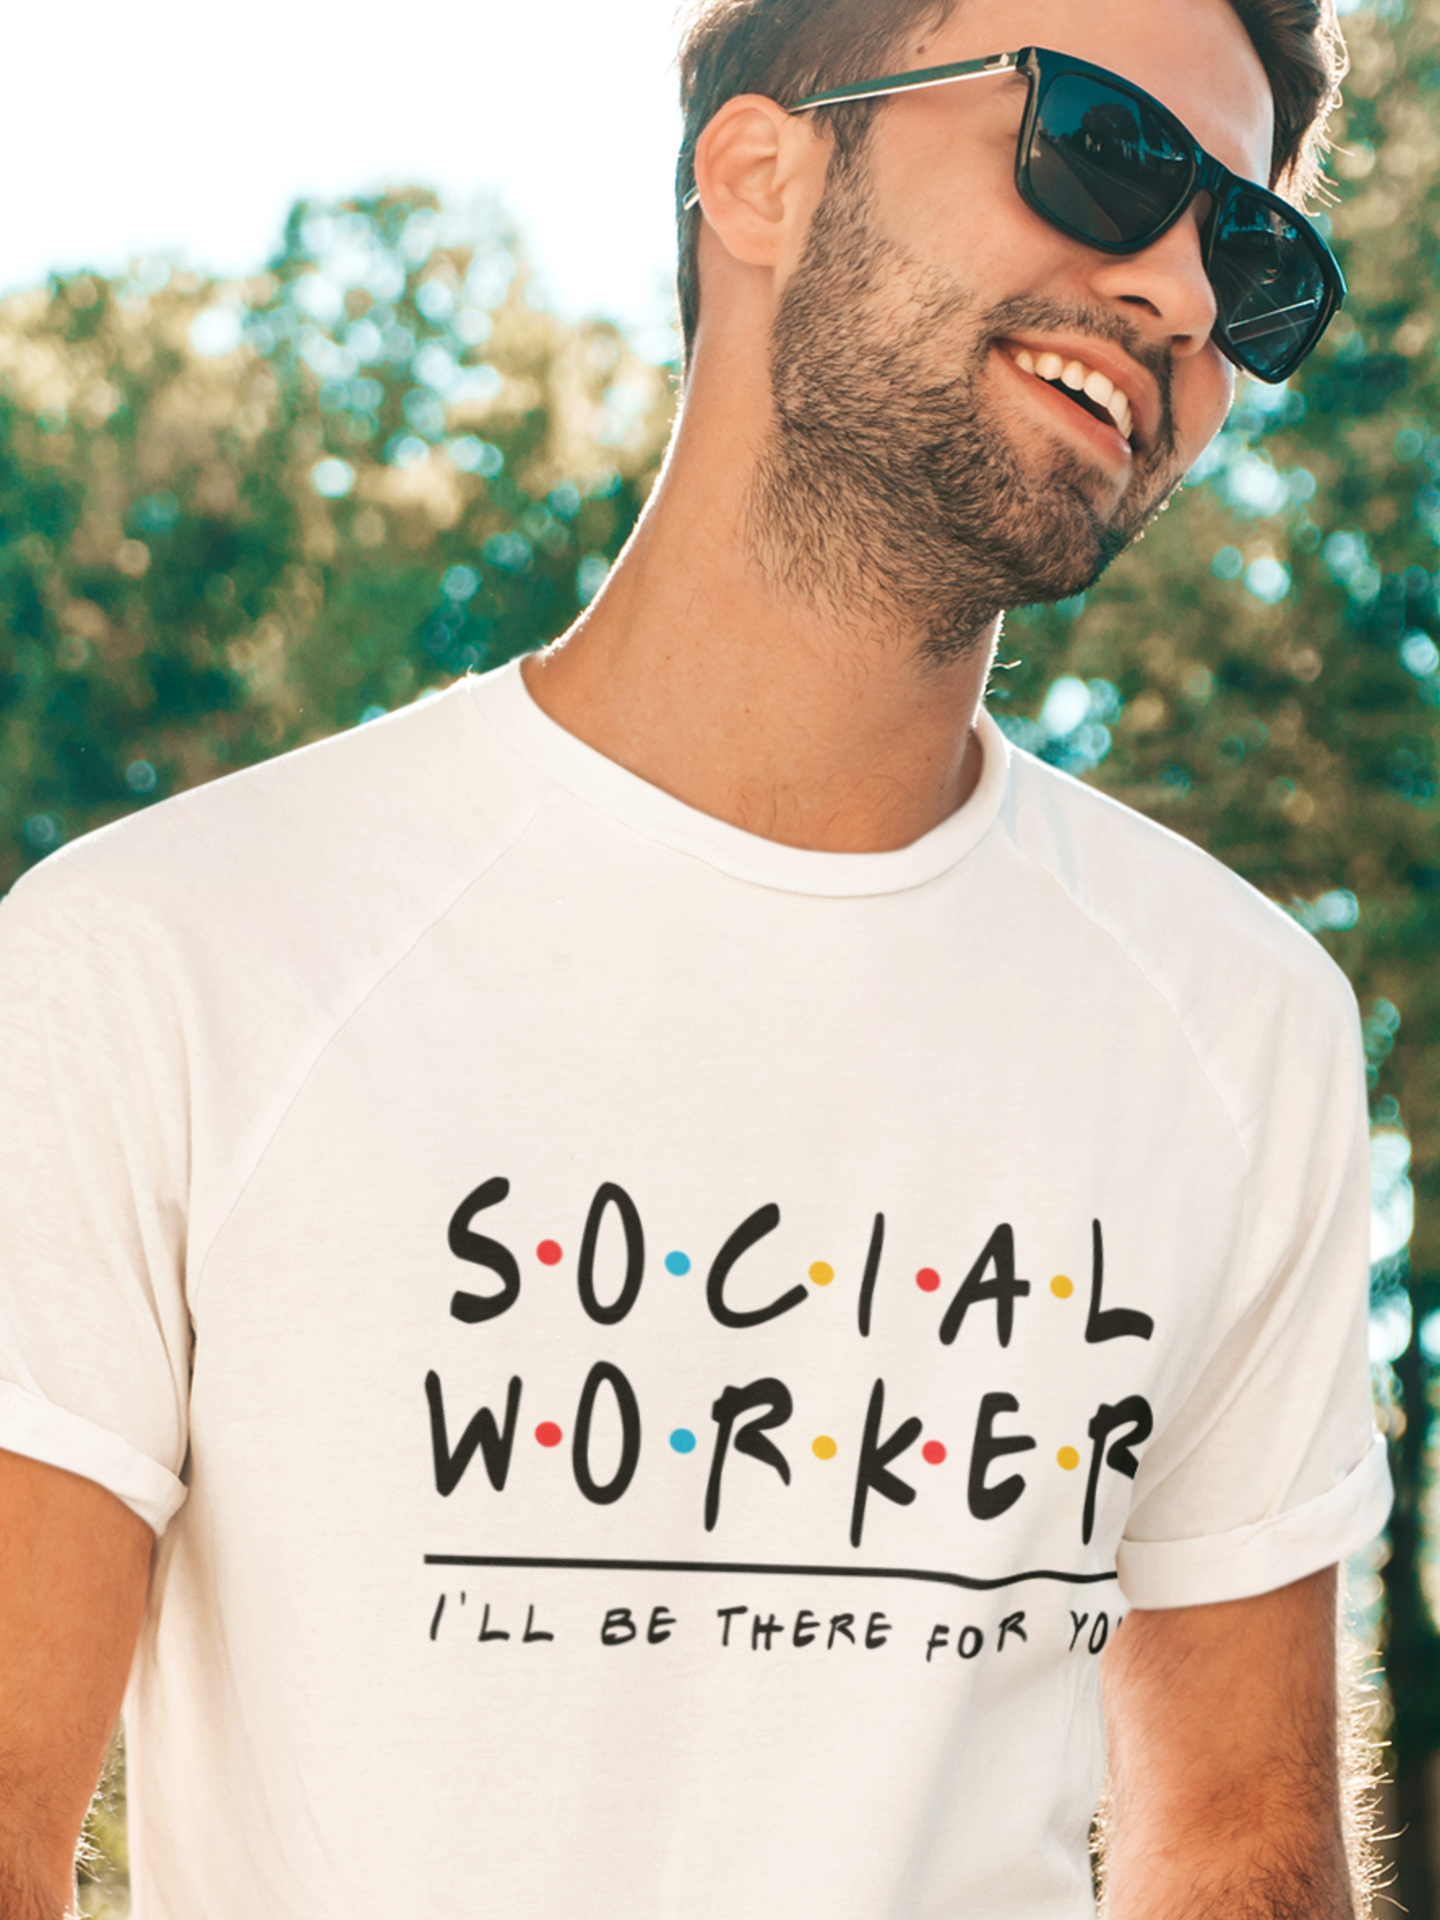 Social worker T shirt